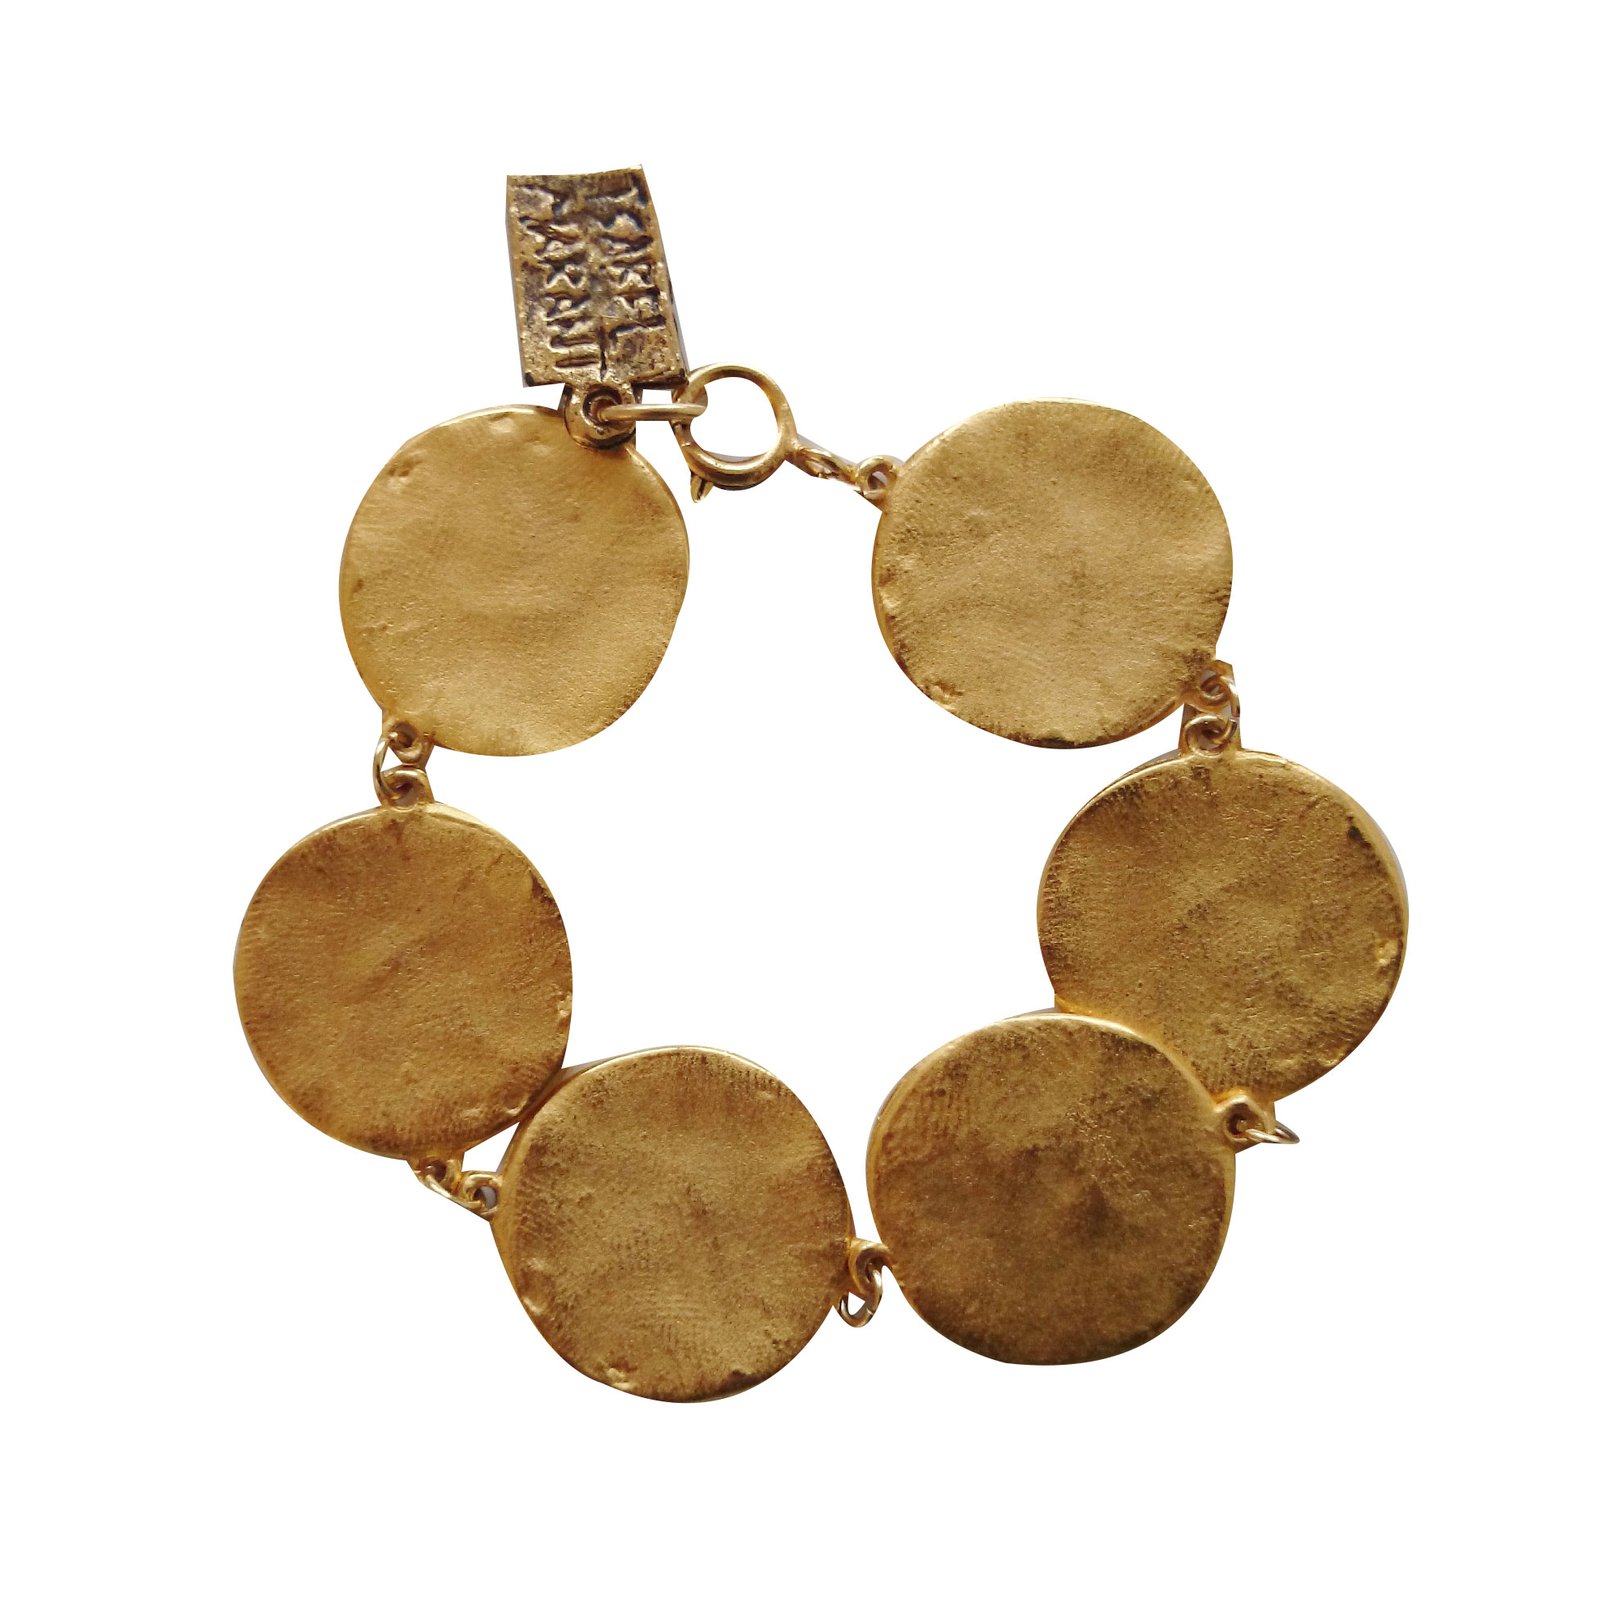 Bracelet with pendants Isabel Marant - GenesinlifeShops Germany